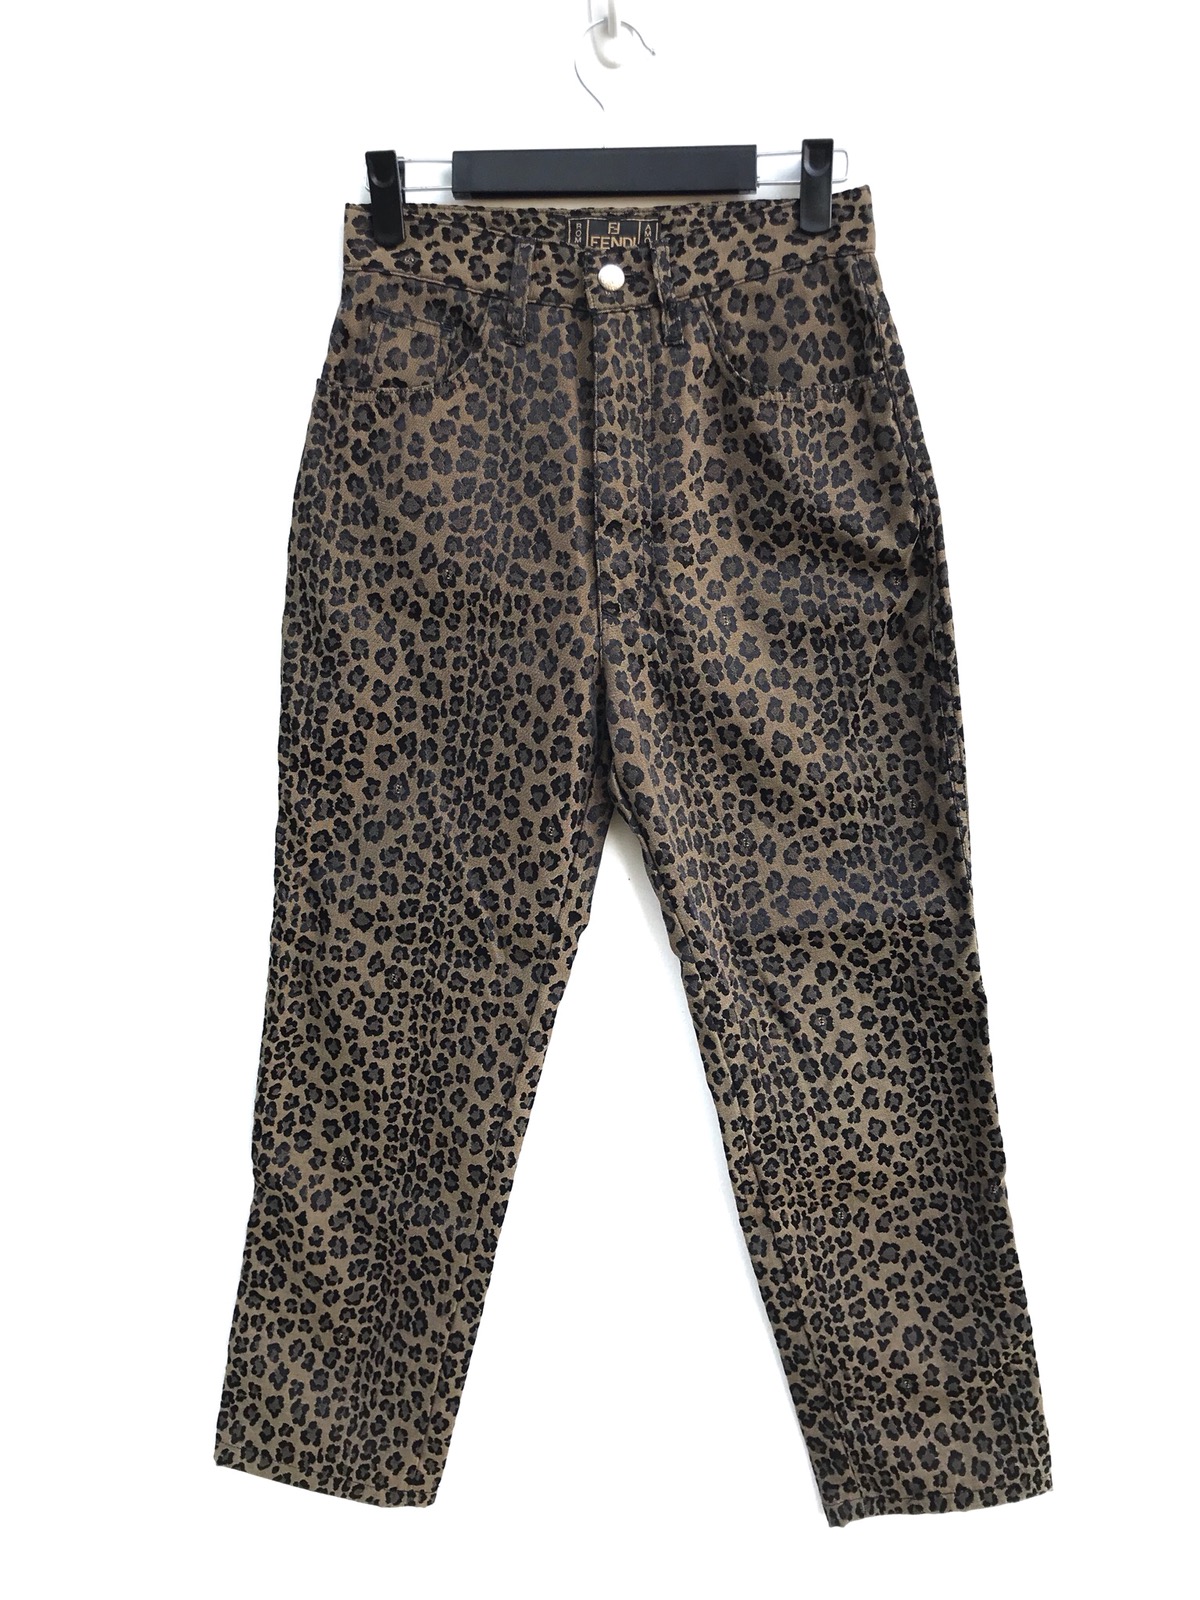 Authentic Fendi Leopard Print Trousers Pants - 1